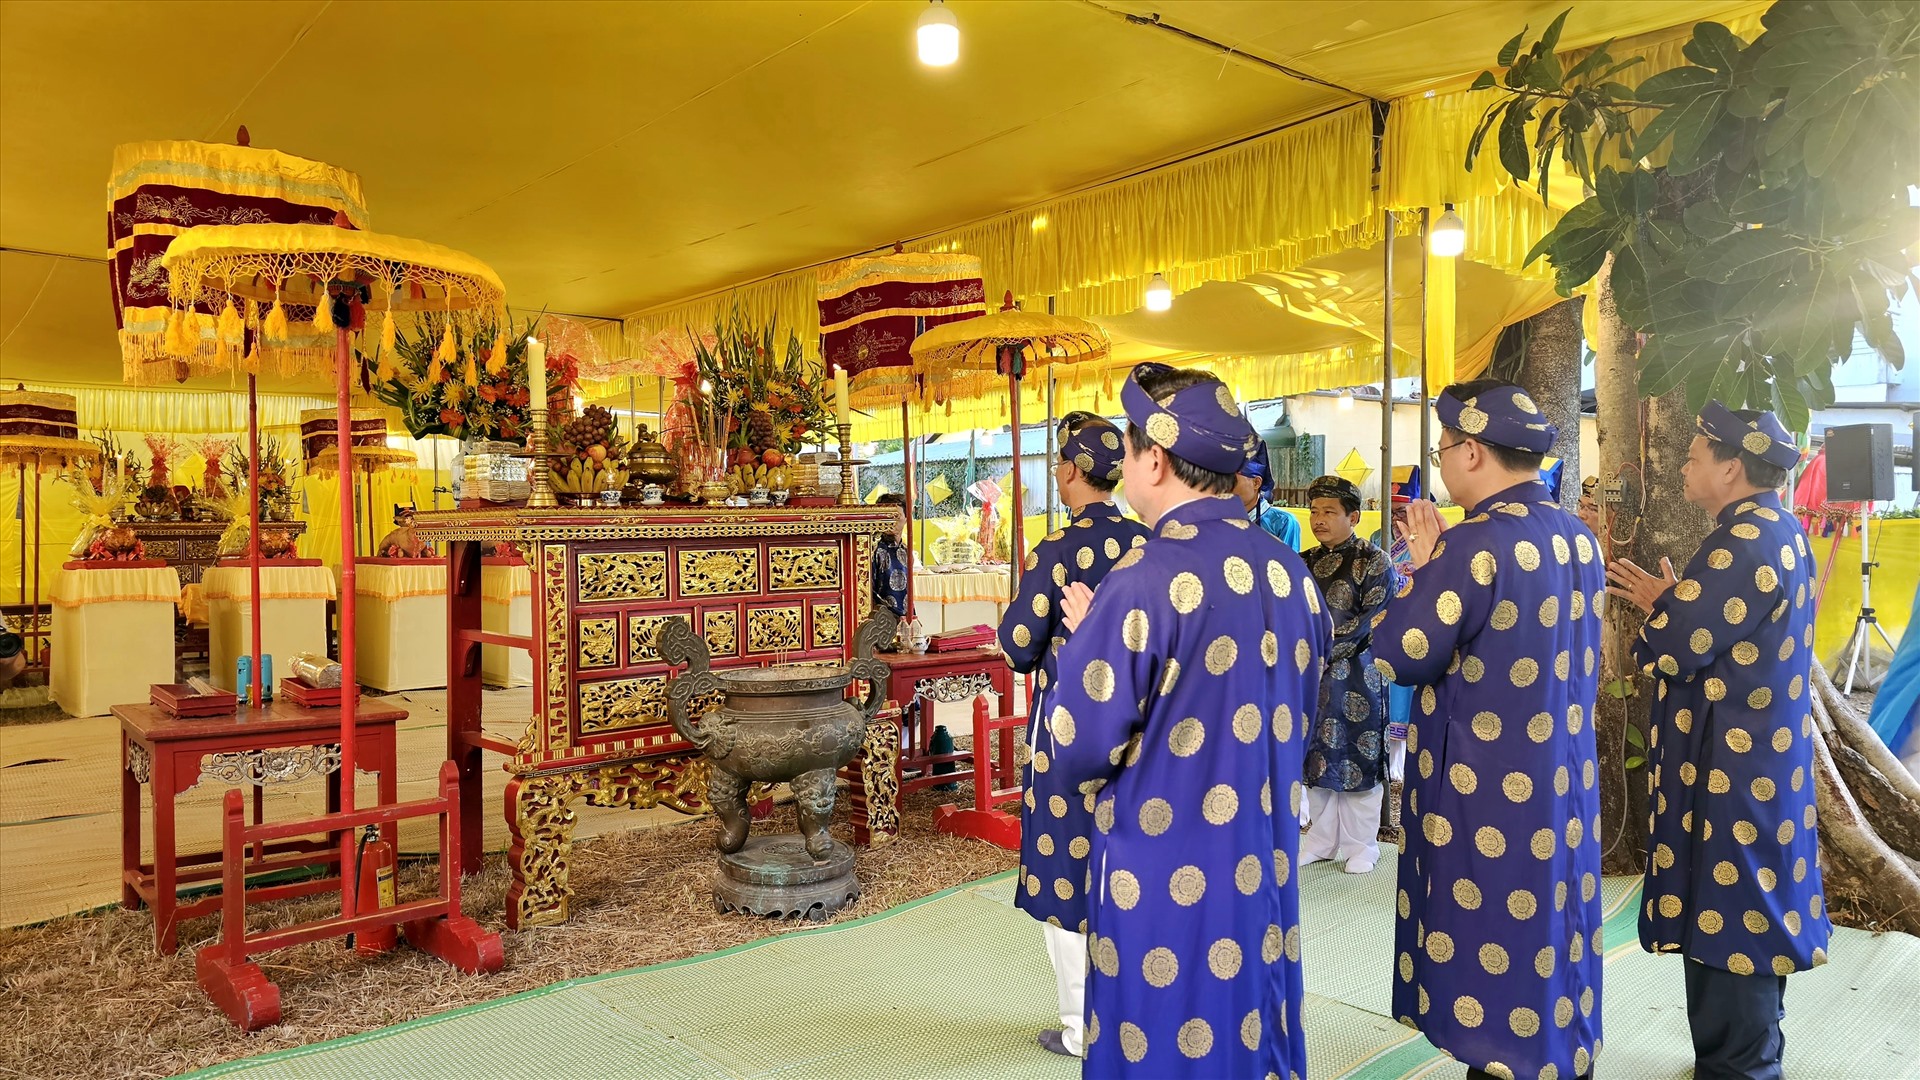 Lễ tế Âm hồn là một lễ tế truyền thống tốt đẹp của Việt Nam đã từng diễn ra trong lịch sử, đặc biệt là dưới thời triều Nguyễn ở Huế, đề cao những giá trị nhân văn, chủ yếu là hình thức gắn kết giữa con người với thế giới tự nhiên.